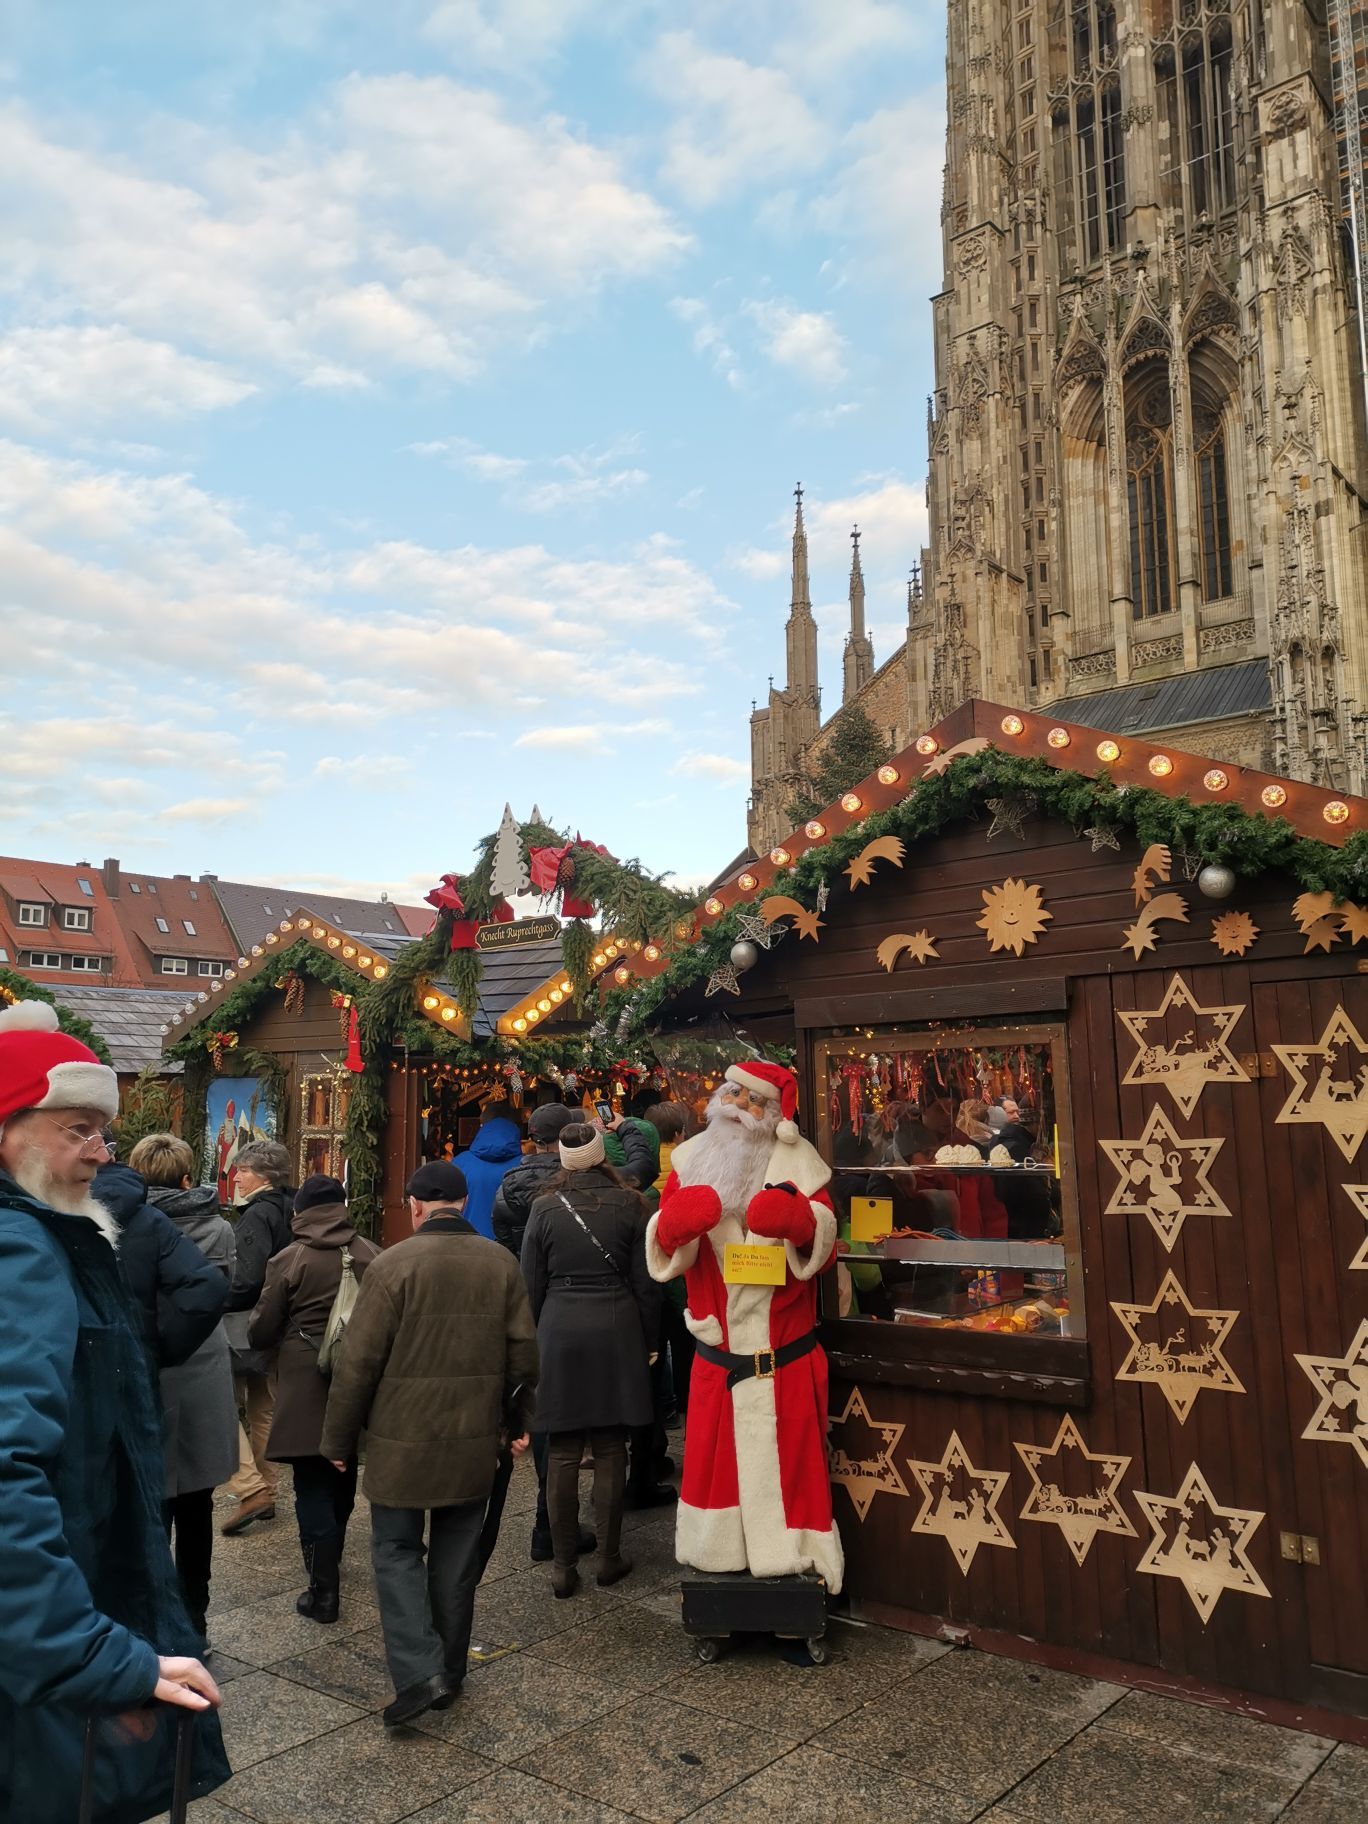 世界最高大教堂下的圣诞市场，德国乌尔姆的圣诞市场，热闹非凡，人头攒动，堪比中国春节年货市场，节日气氛